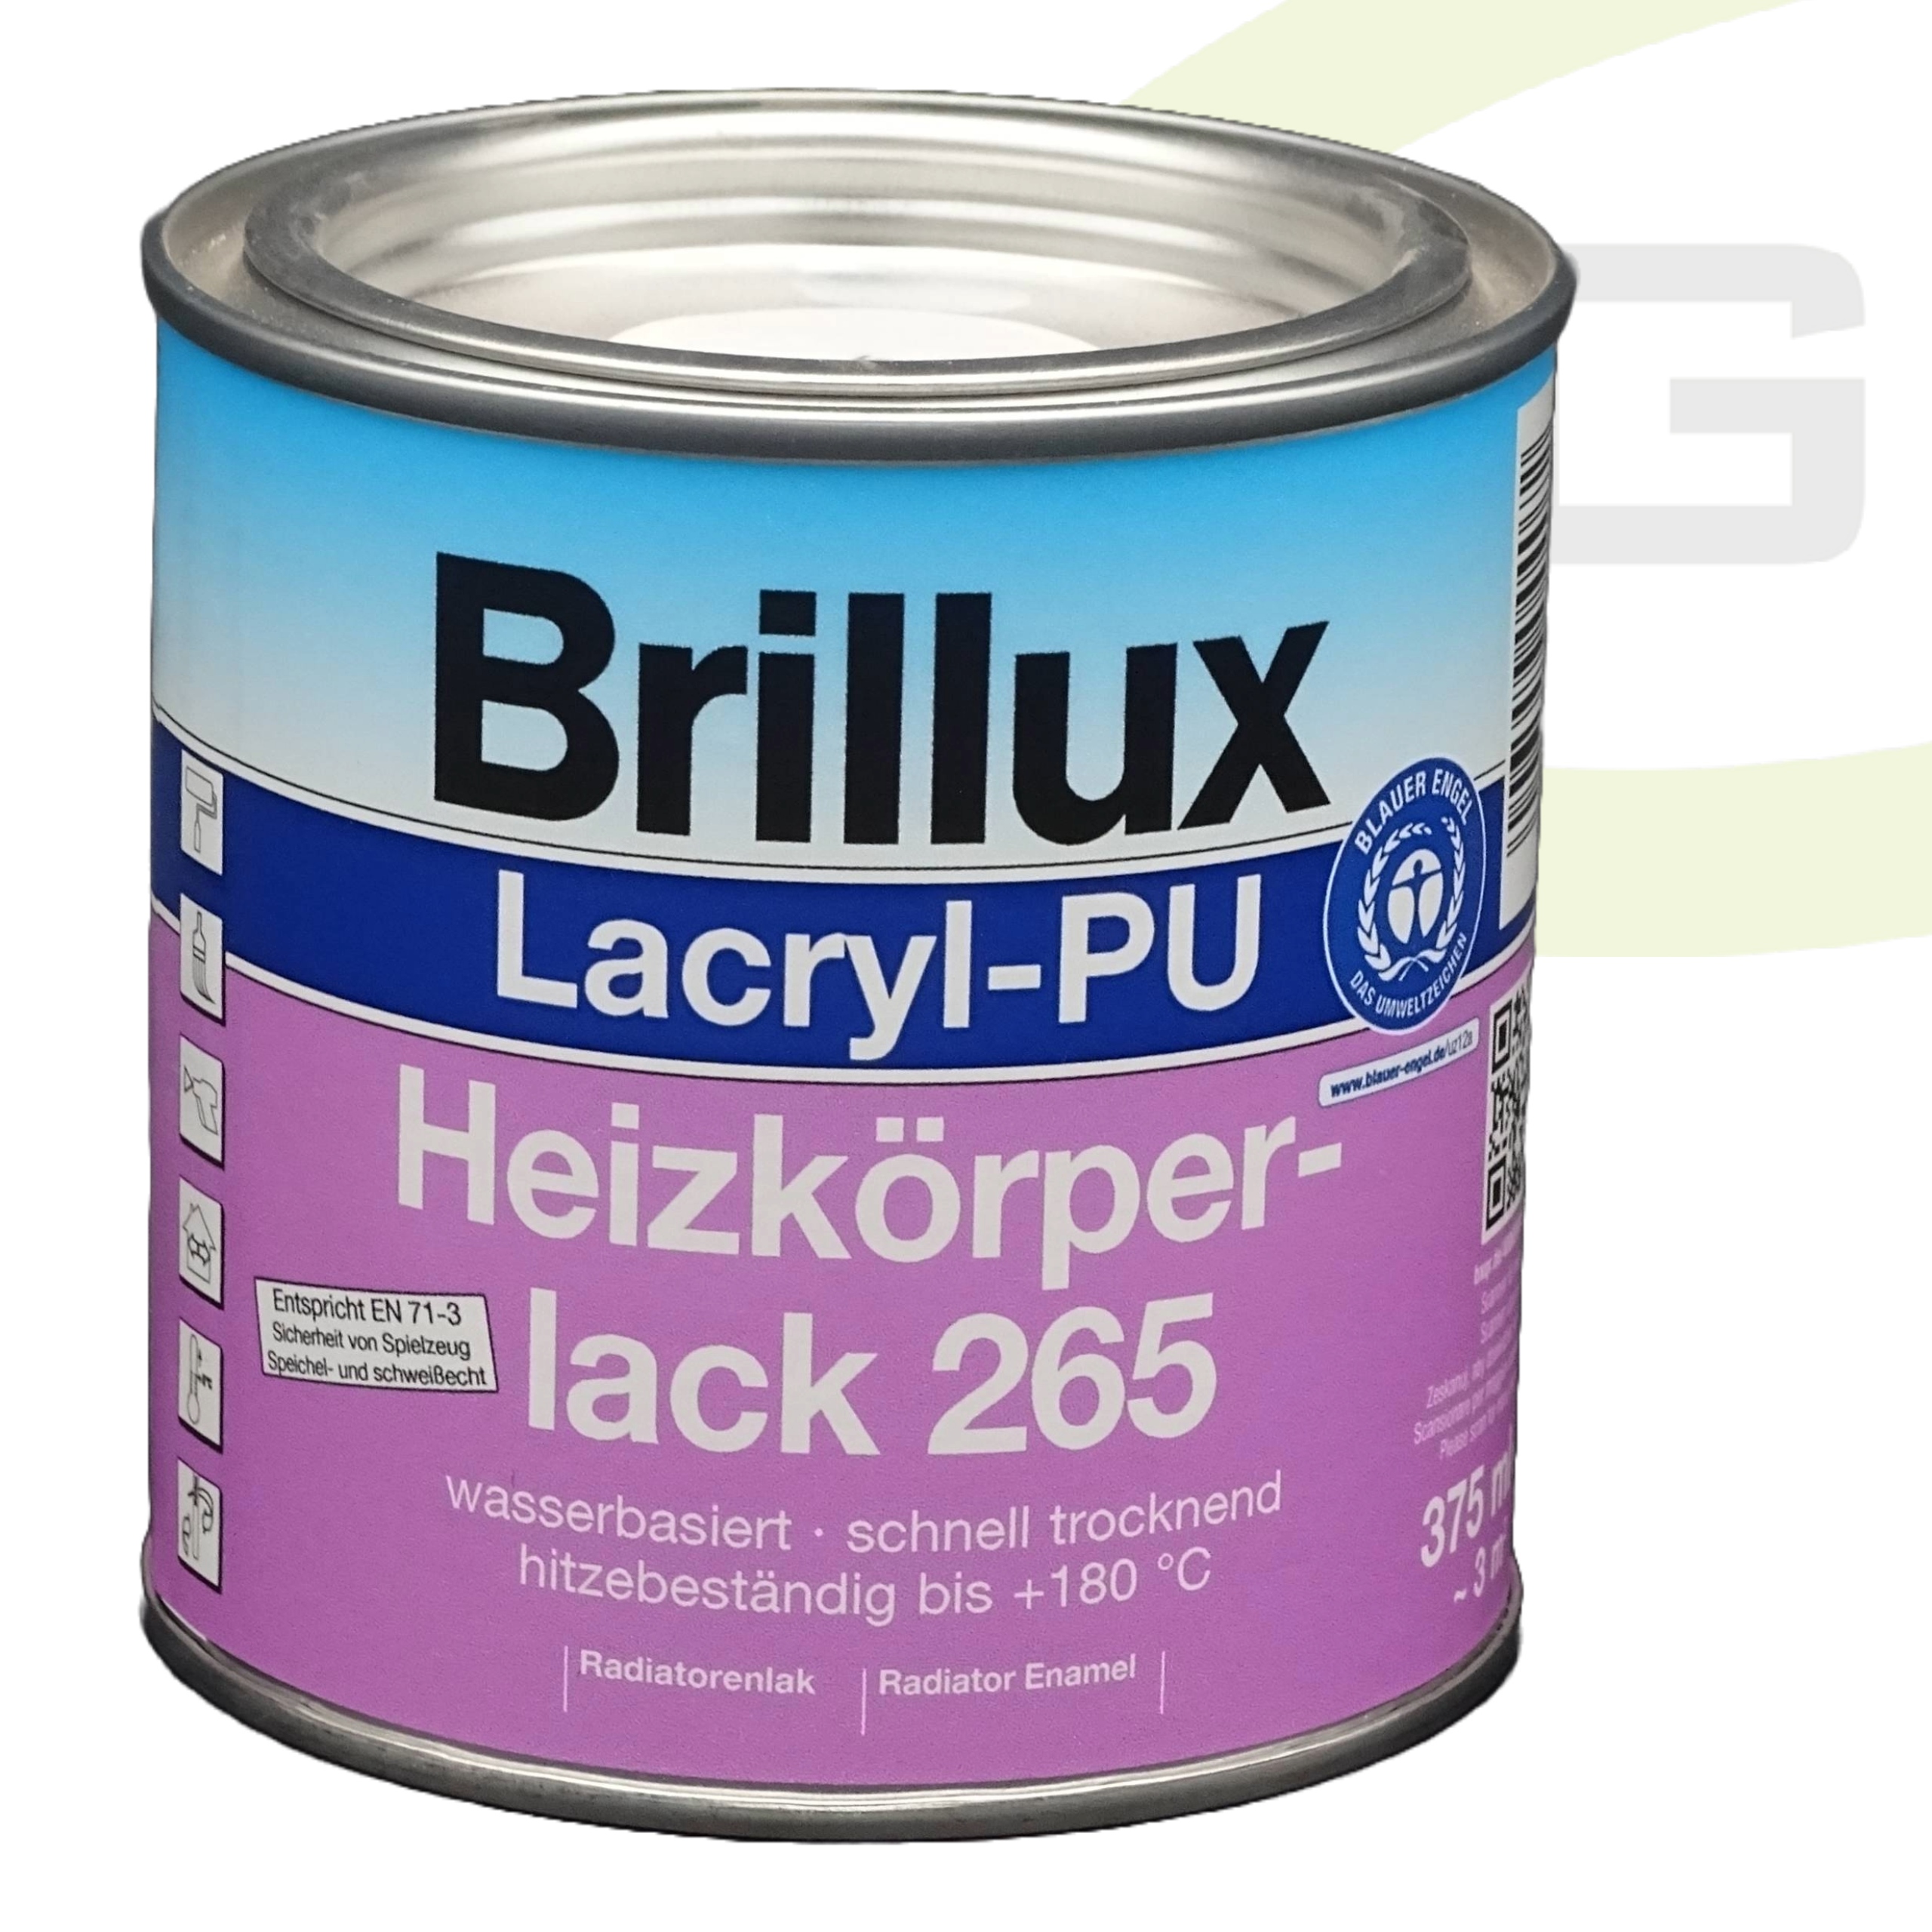 Brillux Lacryl-PU Heizkörperlack 265 glänzend - 375 ml / Wasserbasierter, Hitzebeständiger Heizkörperlack